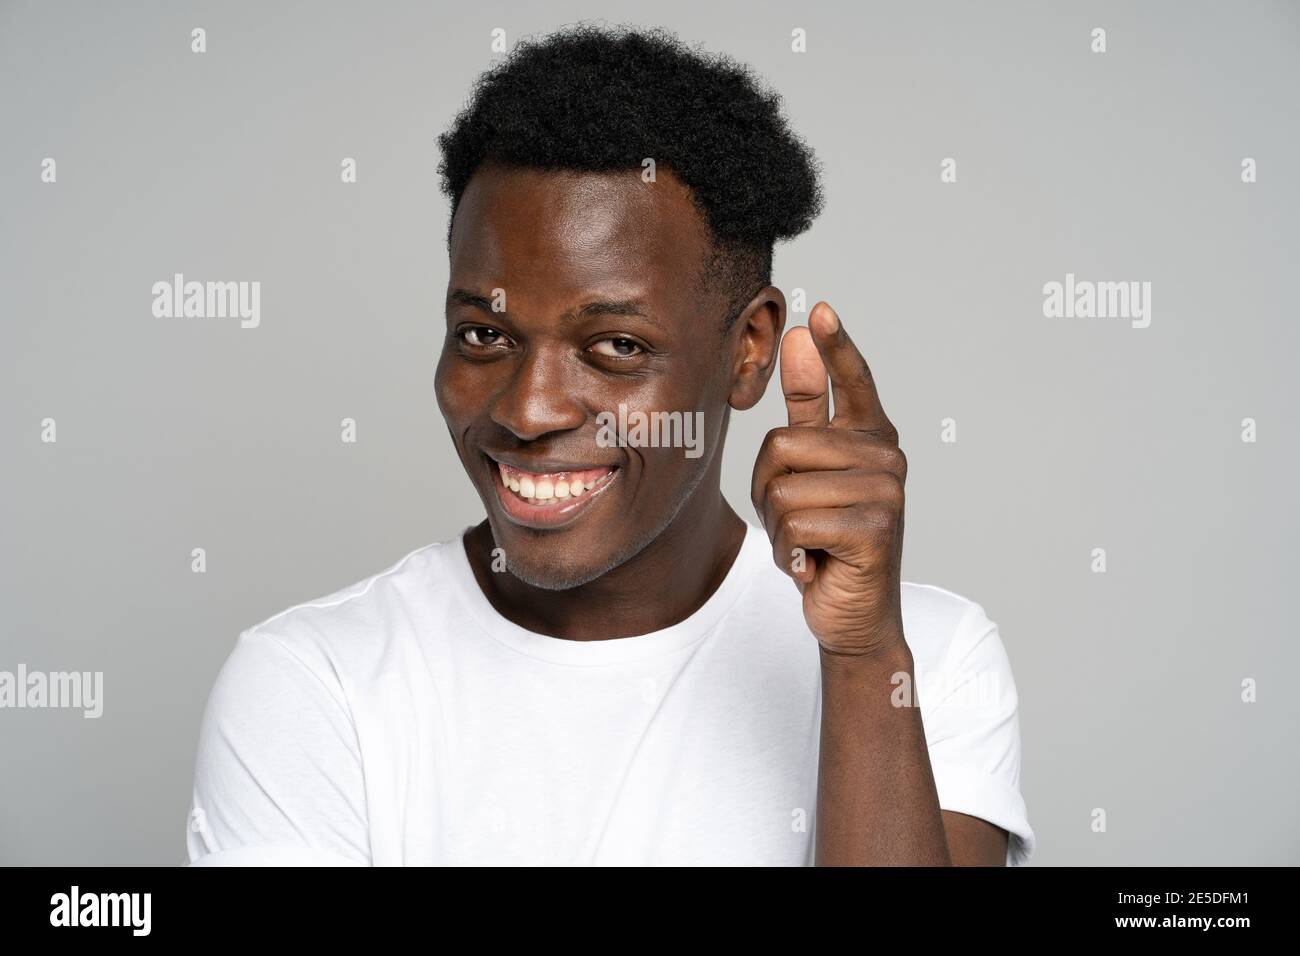 Allegro positivo afro hipster uomo sorridente ampiamente, puntando un dito verso di voi, studio sfondo grigio Foto Stock